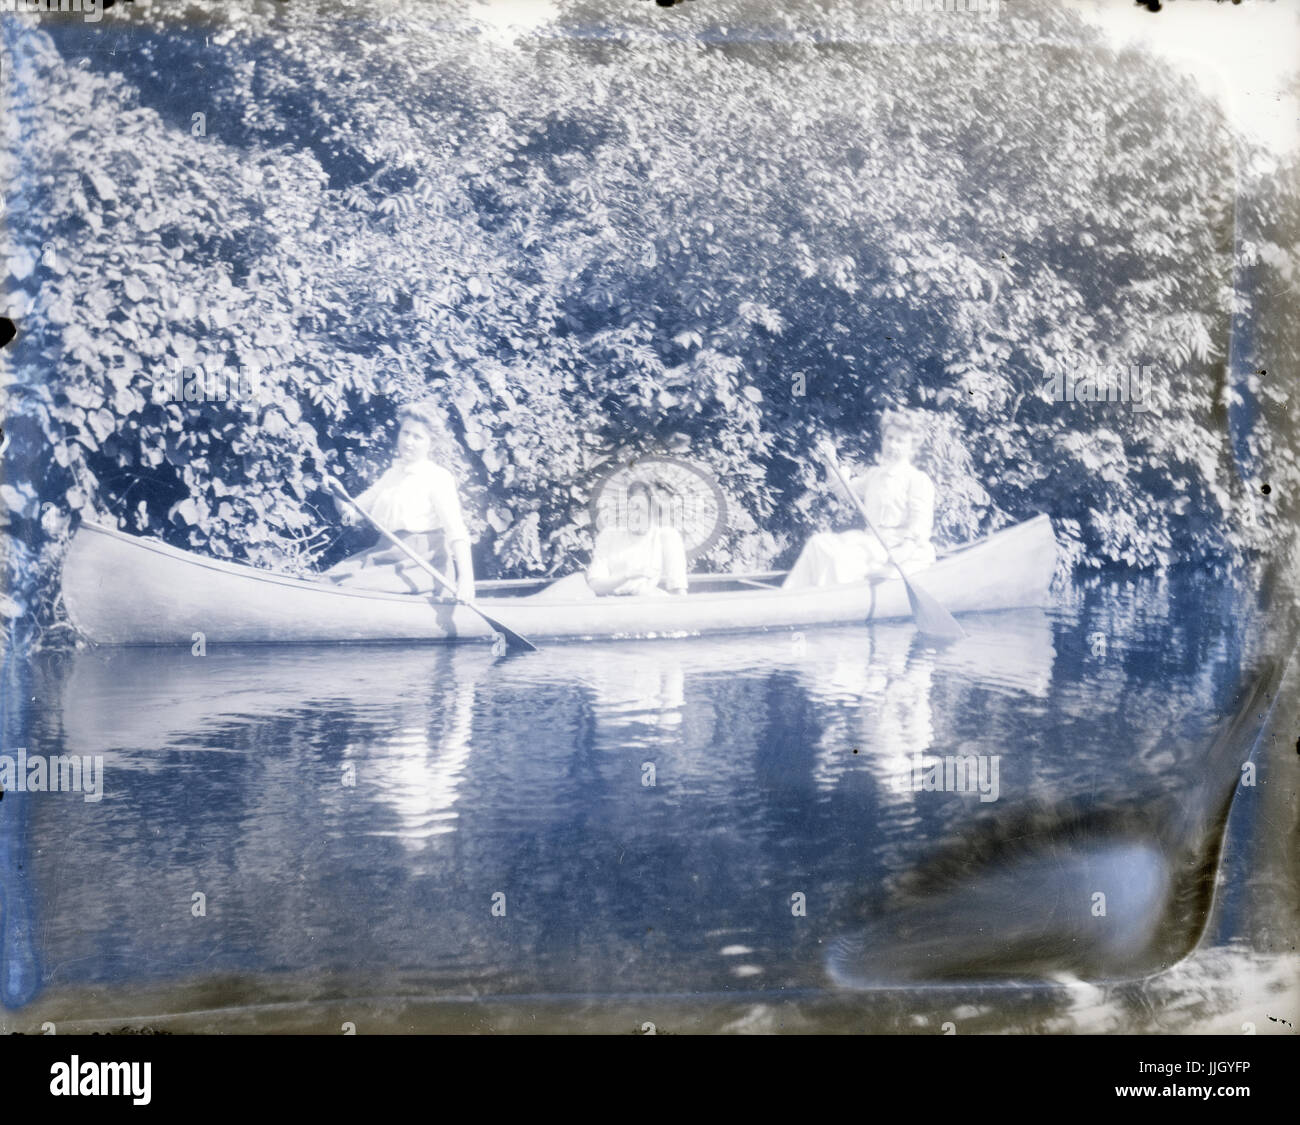 Antike c1910 Foto, drei Frauen in einem Kanu. Lage ist möglicherweise Central Park in New York City, New York oder Roger Williams Park in Providence, Rhode Island, USA. QUELLE: ORIGINALFOTO. Stockfoto